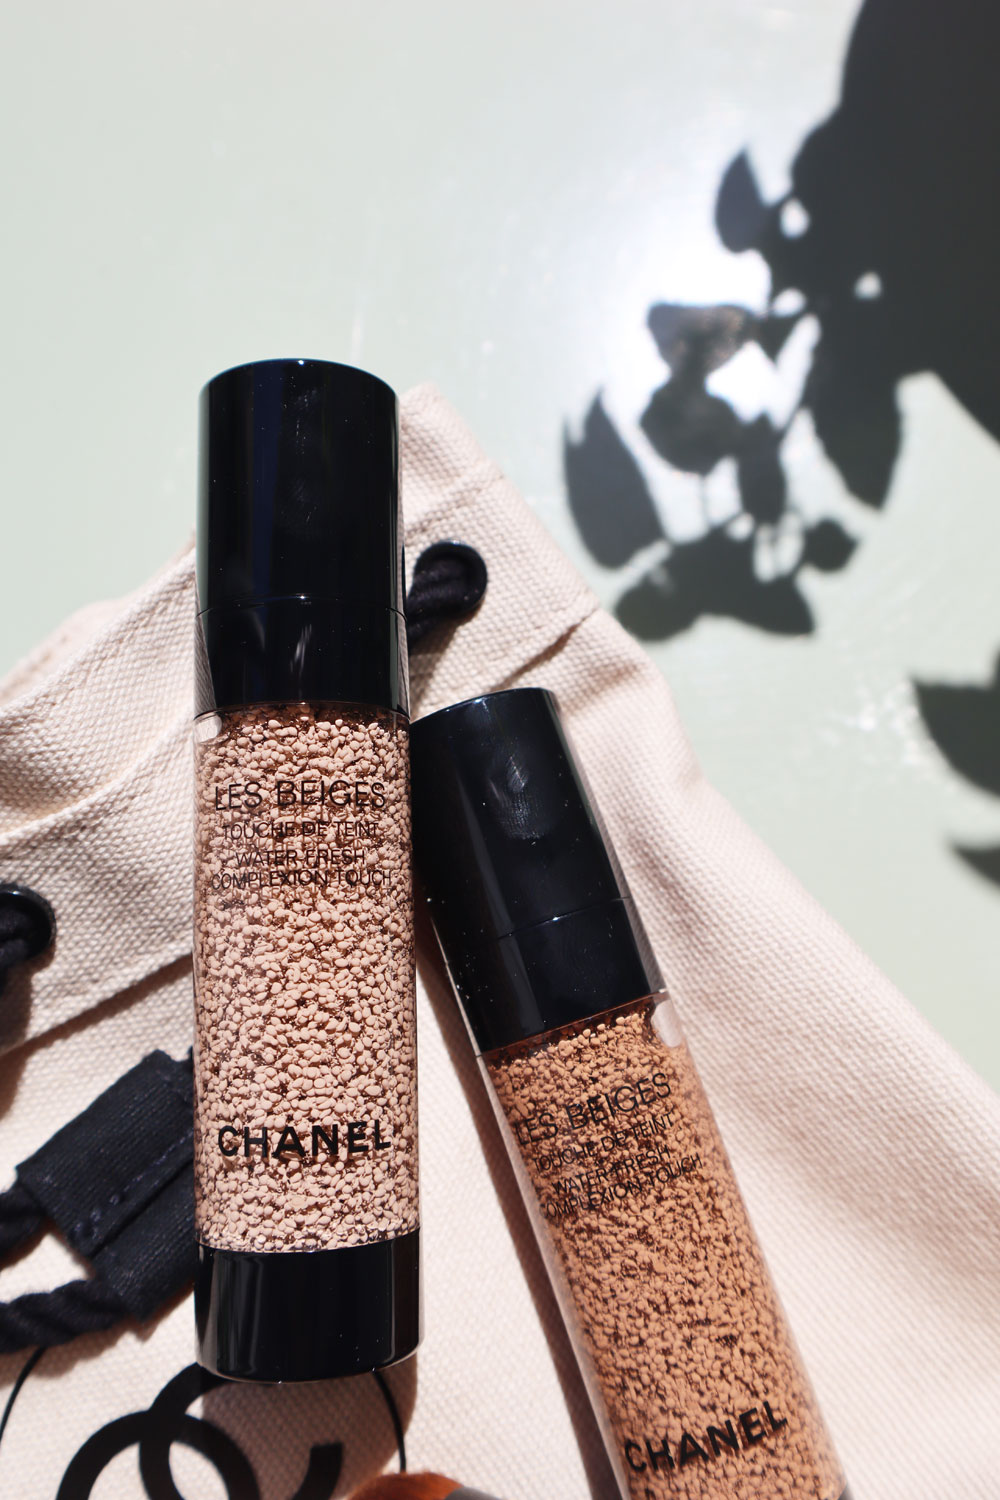 Makeup-Expertin und Influencerin Shazna Ilham testet für sonrisa den neuen Water-fresh Compexion touch von Chanel Les Beiges. 